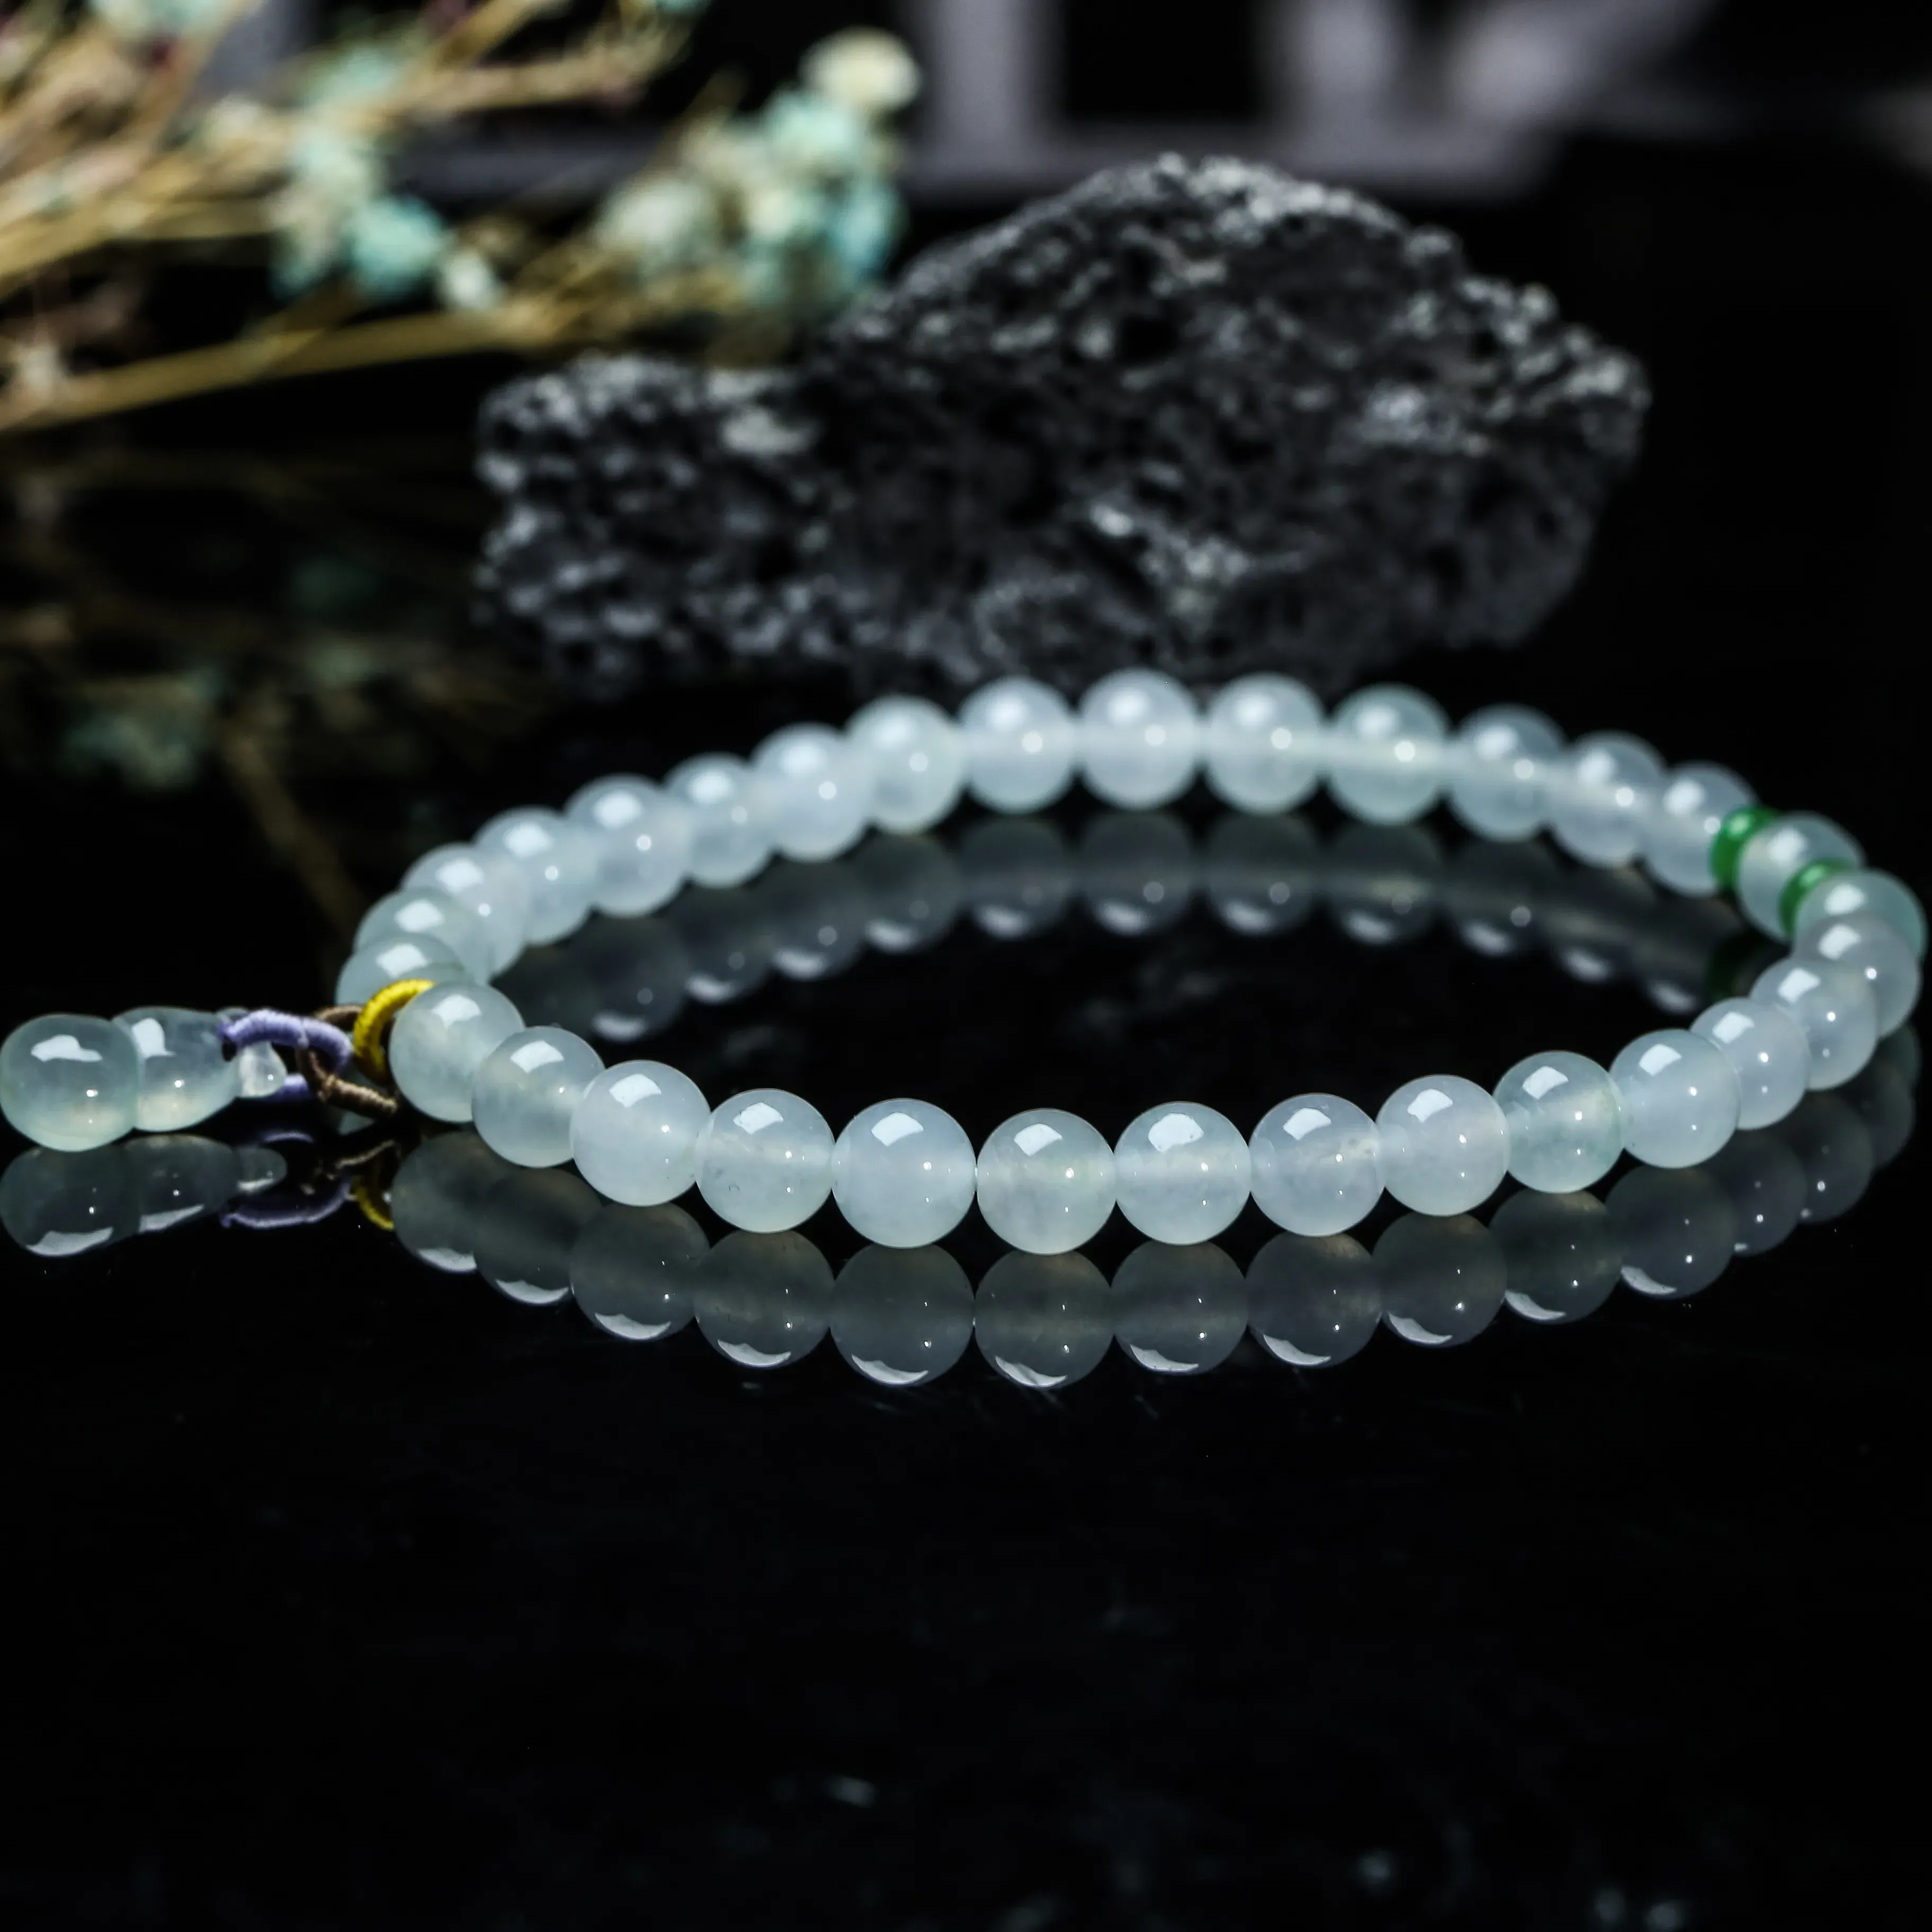 冰种圆珠翡翠手串，圆珠共31颗珠子，取其中一颗珠尺寸大约4.2mm，玉质水润，实物漂亮。上手佩戴时